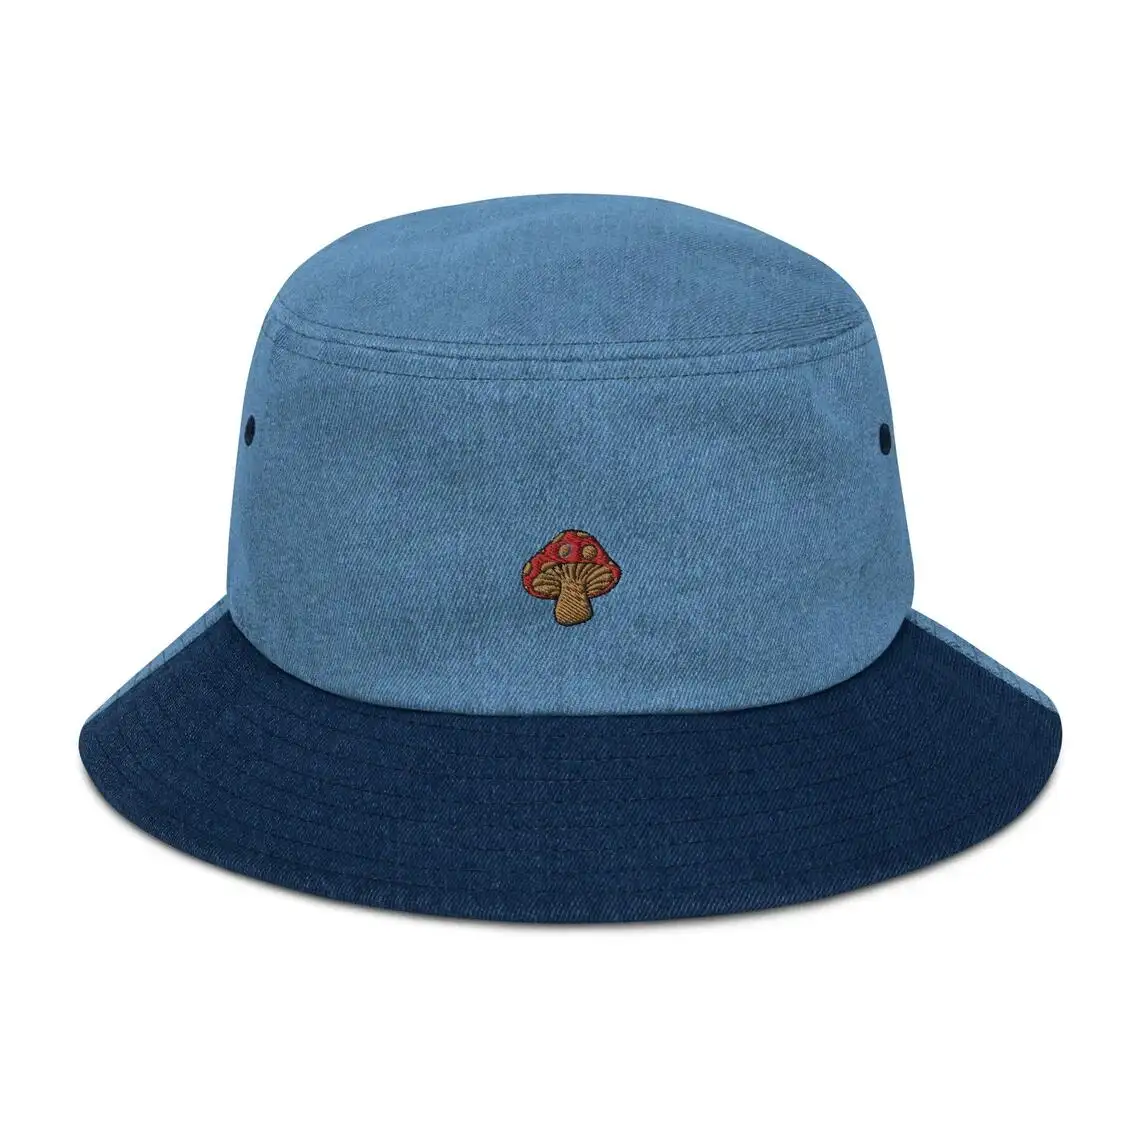 Sombrero de cubo de tela vaquera con bordado a mano, bordado a la moda, seta, transpirable, cómodo, personalizado, alta calidad, para verano